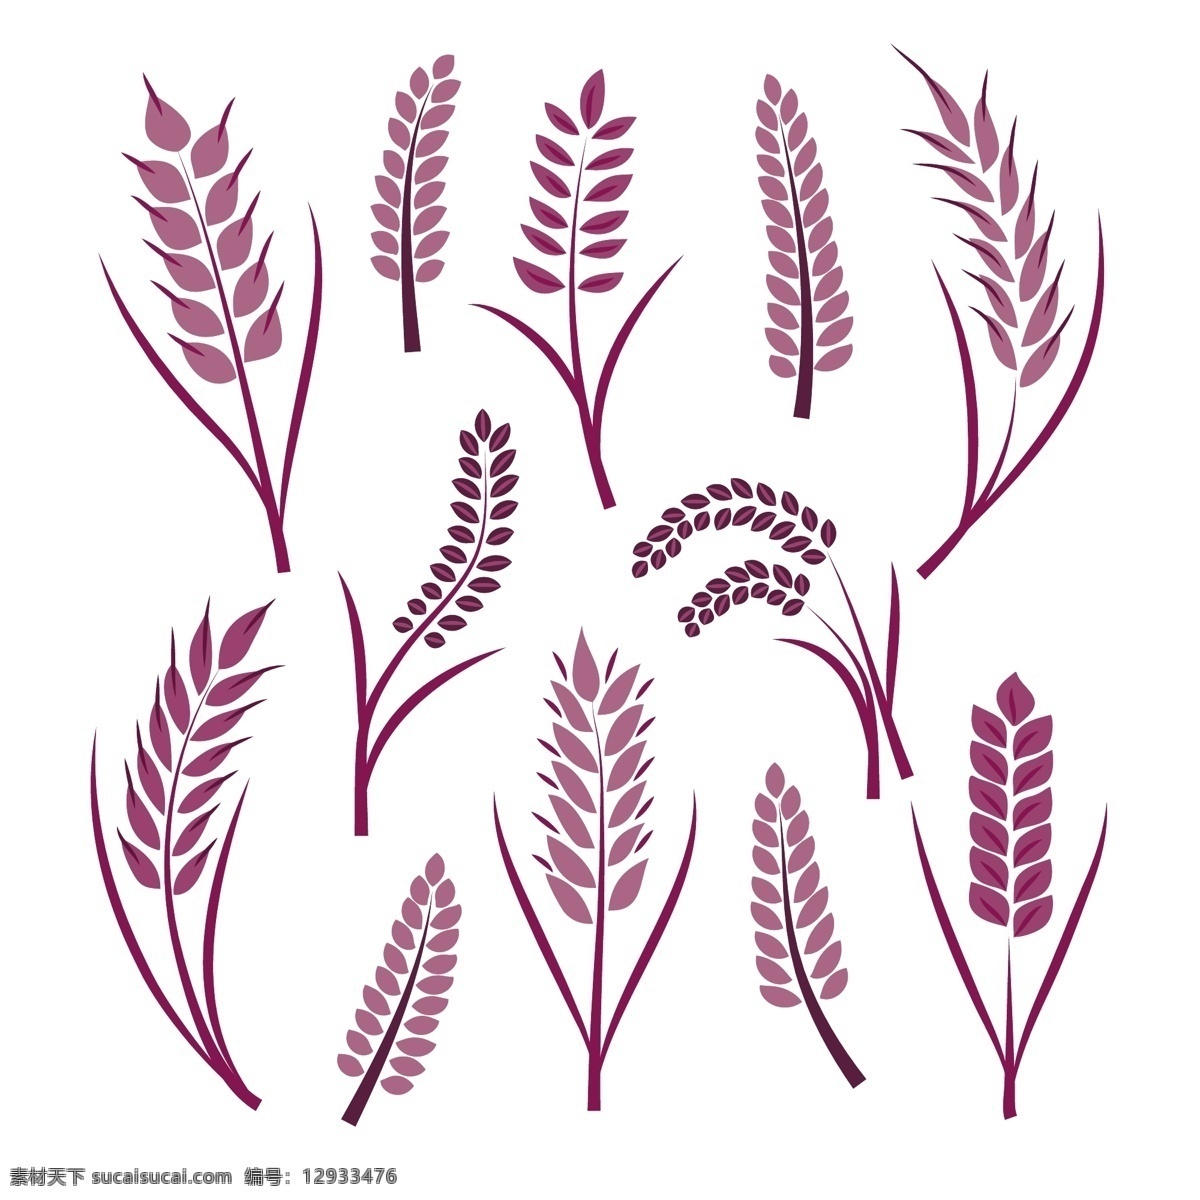 各种 紫色 卡通 小麦 合集 矢量图 麦穗 简约 五谷 金色麦穗 手绘麦子 小麦合集 插画元素 小麦矢量图 大麦 矢量插画 小麦图标 庄稼 设计元素